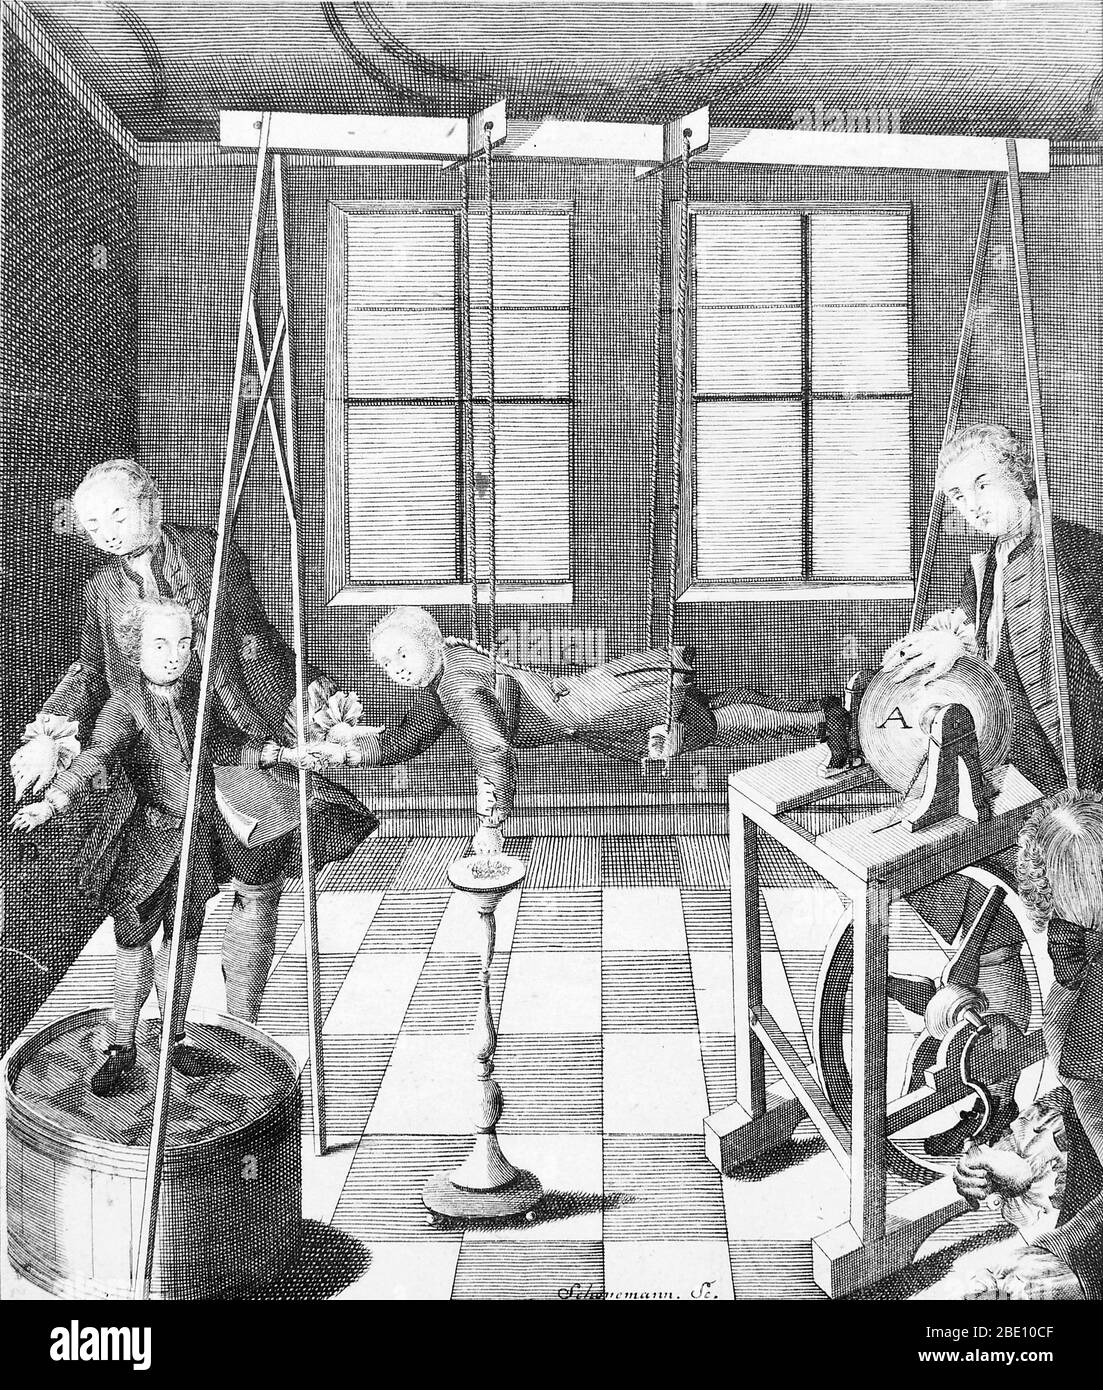 La máquina eléctrica de Christian August Hausen, 1743. El niño suspendido de las cuerdas de seda actúa como una especie de conductor principal. De 'Novi profectus in historia electricitatis' de Hausen. Hausen (1693-1743) fue un matemático alemán conocido por su investigación en electricidad, en particular por el uso de un generador triboeléctrico. El generador de Hausen era similar a los generadores anteriores, como el de Francis Hauksbee. Consistía en un globo de cristal rotado por un cordón y una rueda grande. Un asistente frotó el globo con su mano para producir electricidad estática. El libro de Hausen describe su generador y. Foto de stock